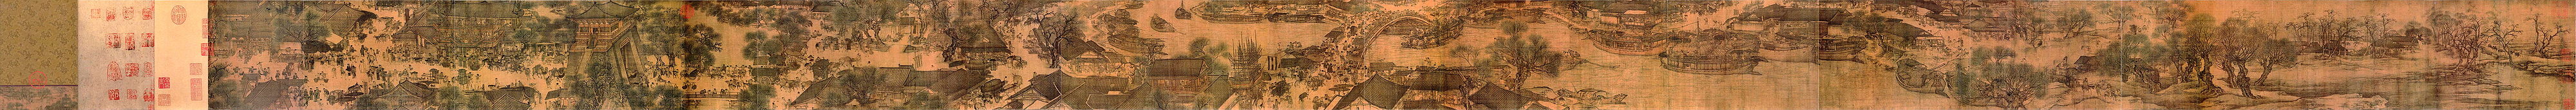 Panorama aus der Qingming-Rolle von Zhang ZeduanDie Bildrolle zeigt das Alltagsleben der Stadt Kaifeng, der Hauptstadt der Nördlichen Song-Dynastie während des chinesischen Totengedenktags Qingming